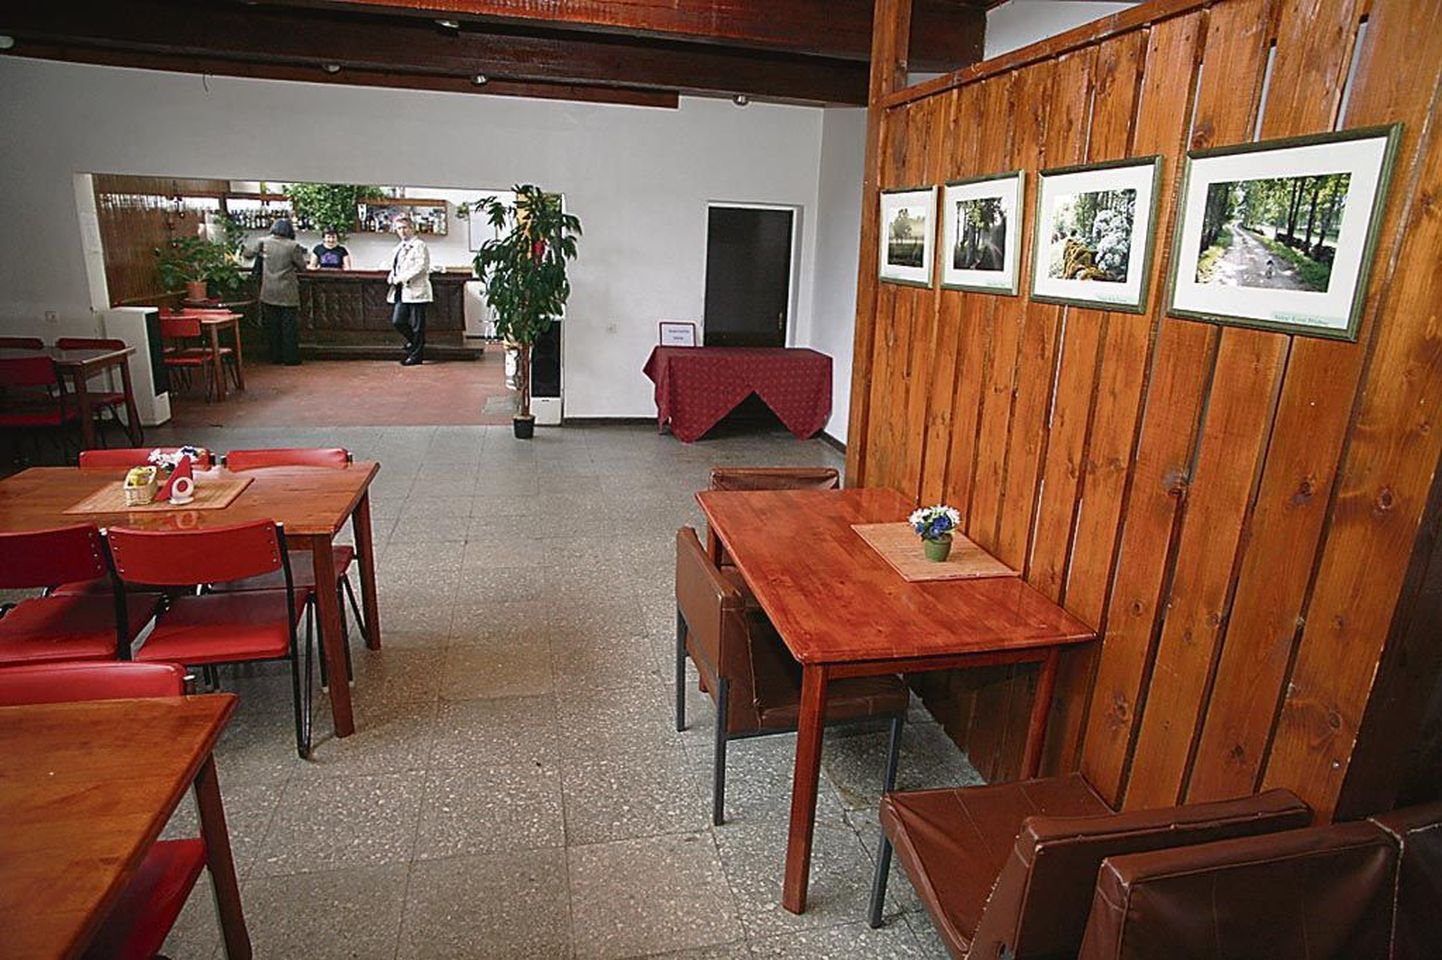 Koonga mõisa tiivas on tööpäeviti avatud söökla, nädalavahetustel töötab samas baar, toidu- ja meelelahutuskoha mööbli on ruumi sobitanud kunagine Soontagana kolhoos.